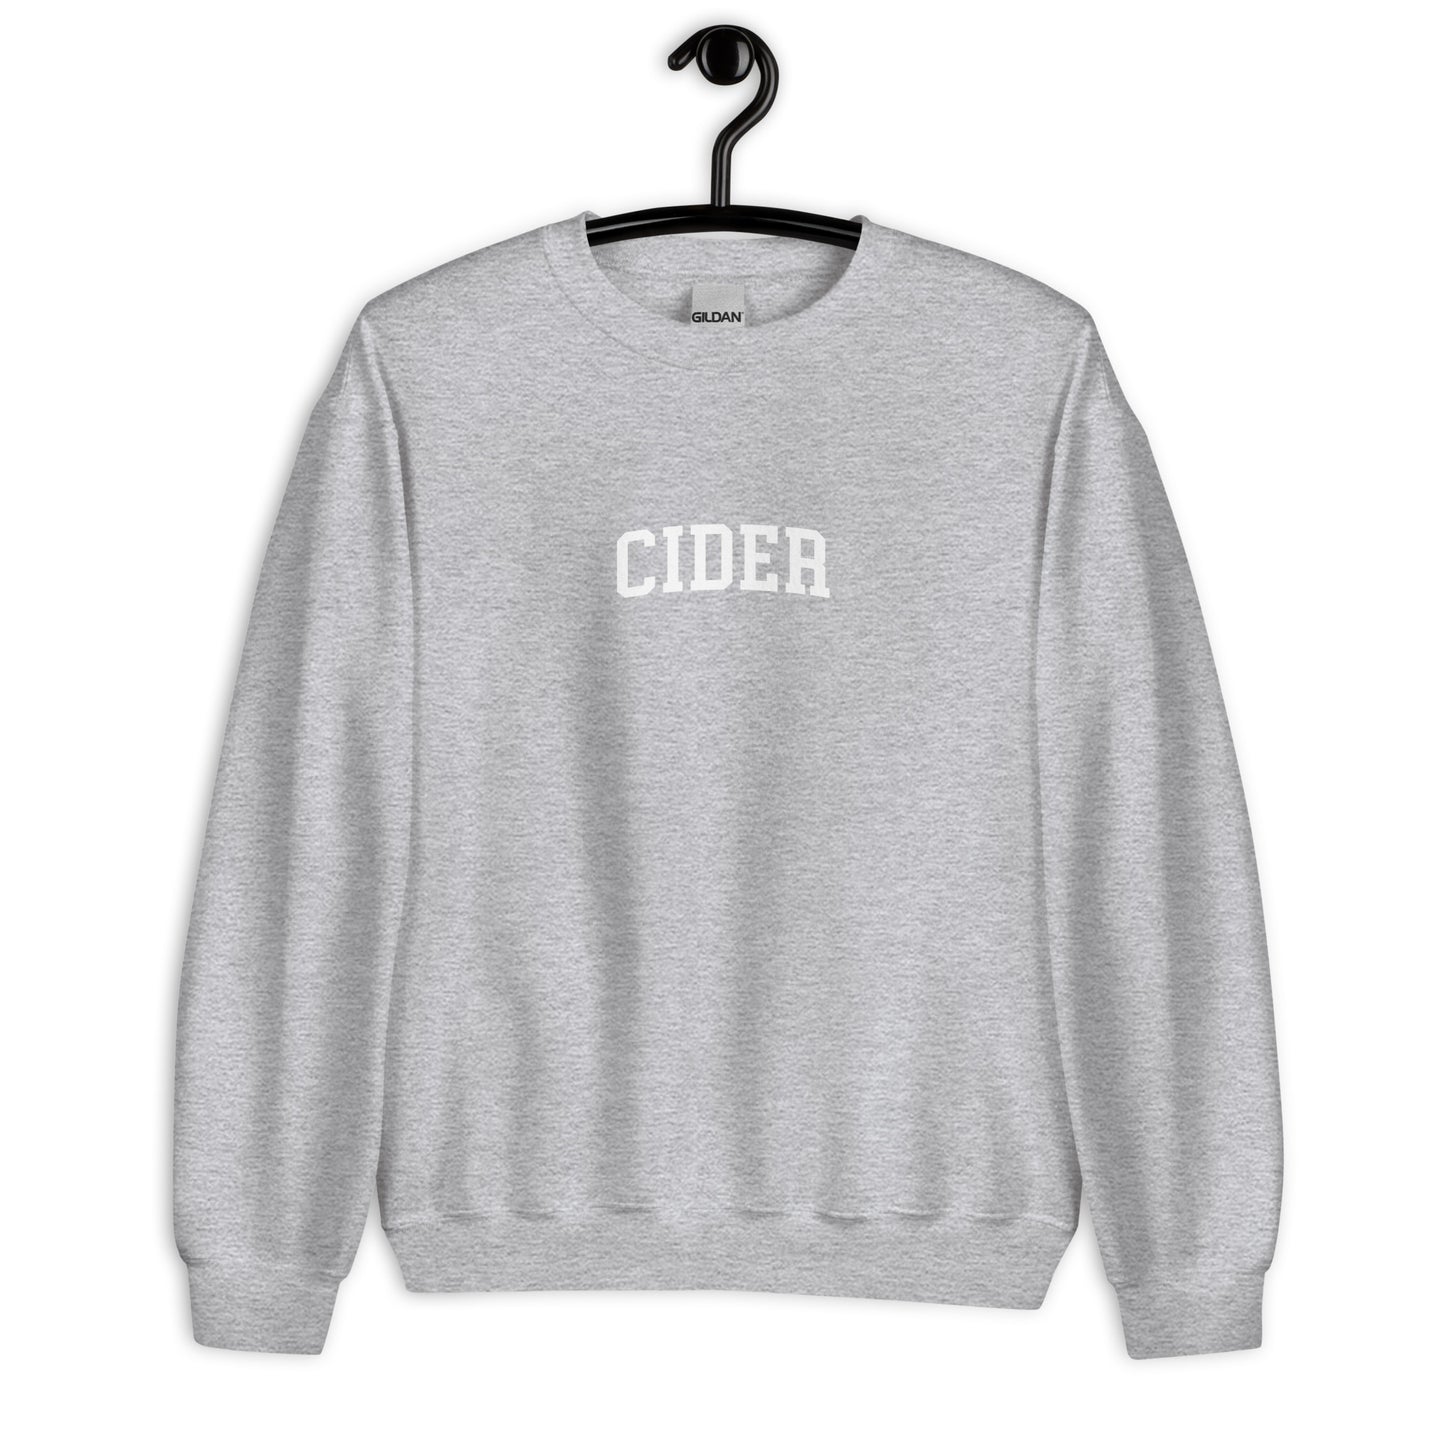 Cider Sweatshirt - Arched Font